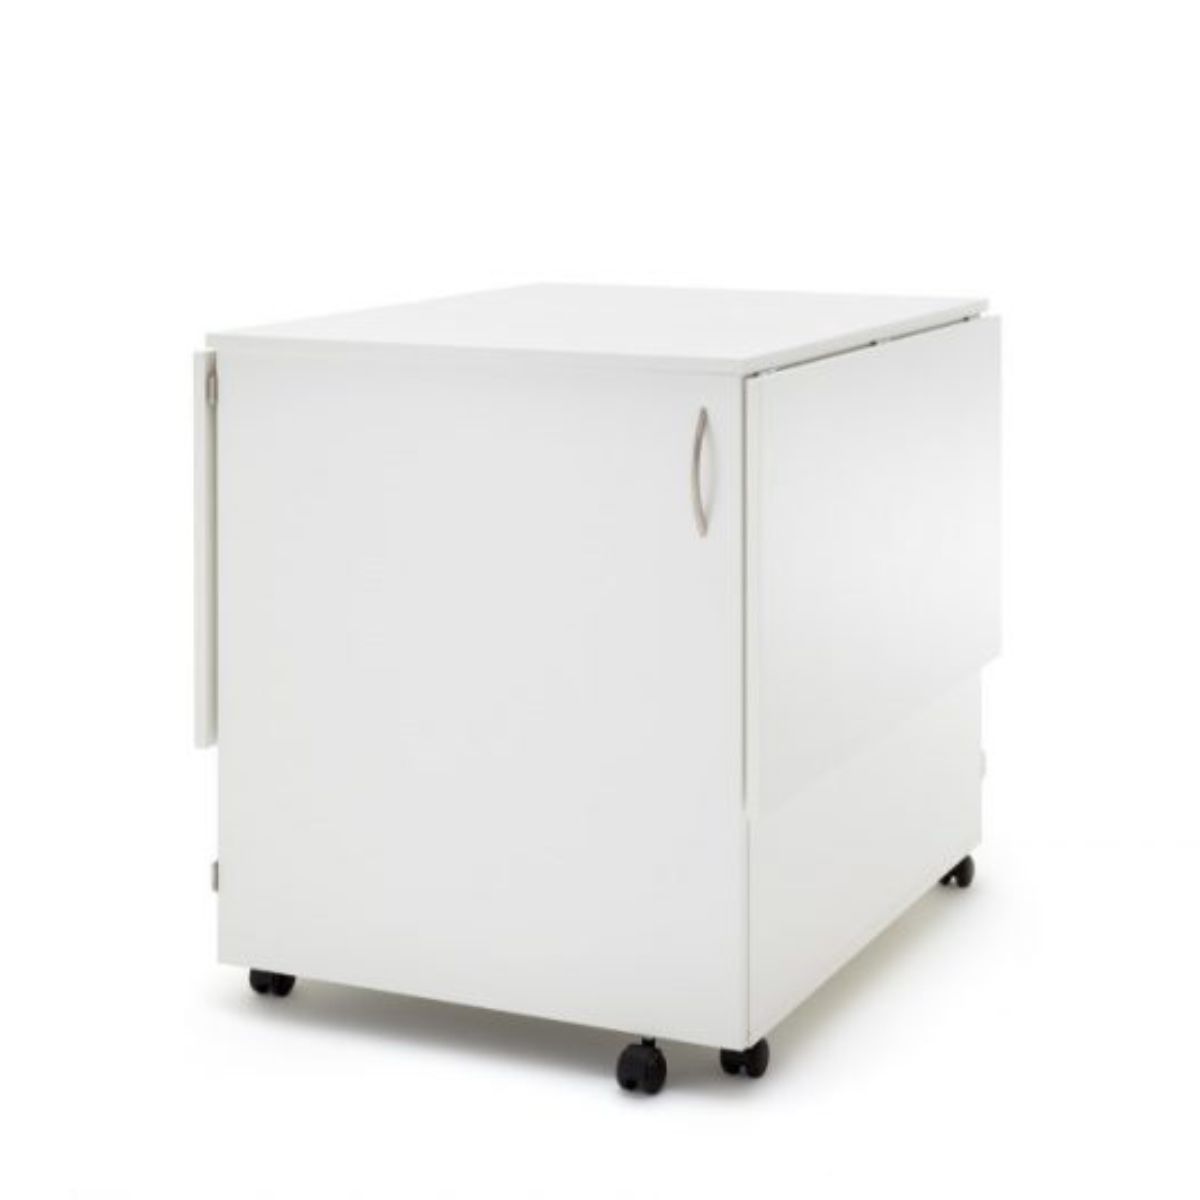 RMF- Möbel Craft Space zum Aufbewahren und Zuschneiden, Buche Style.